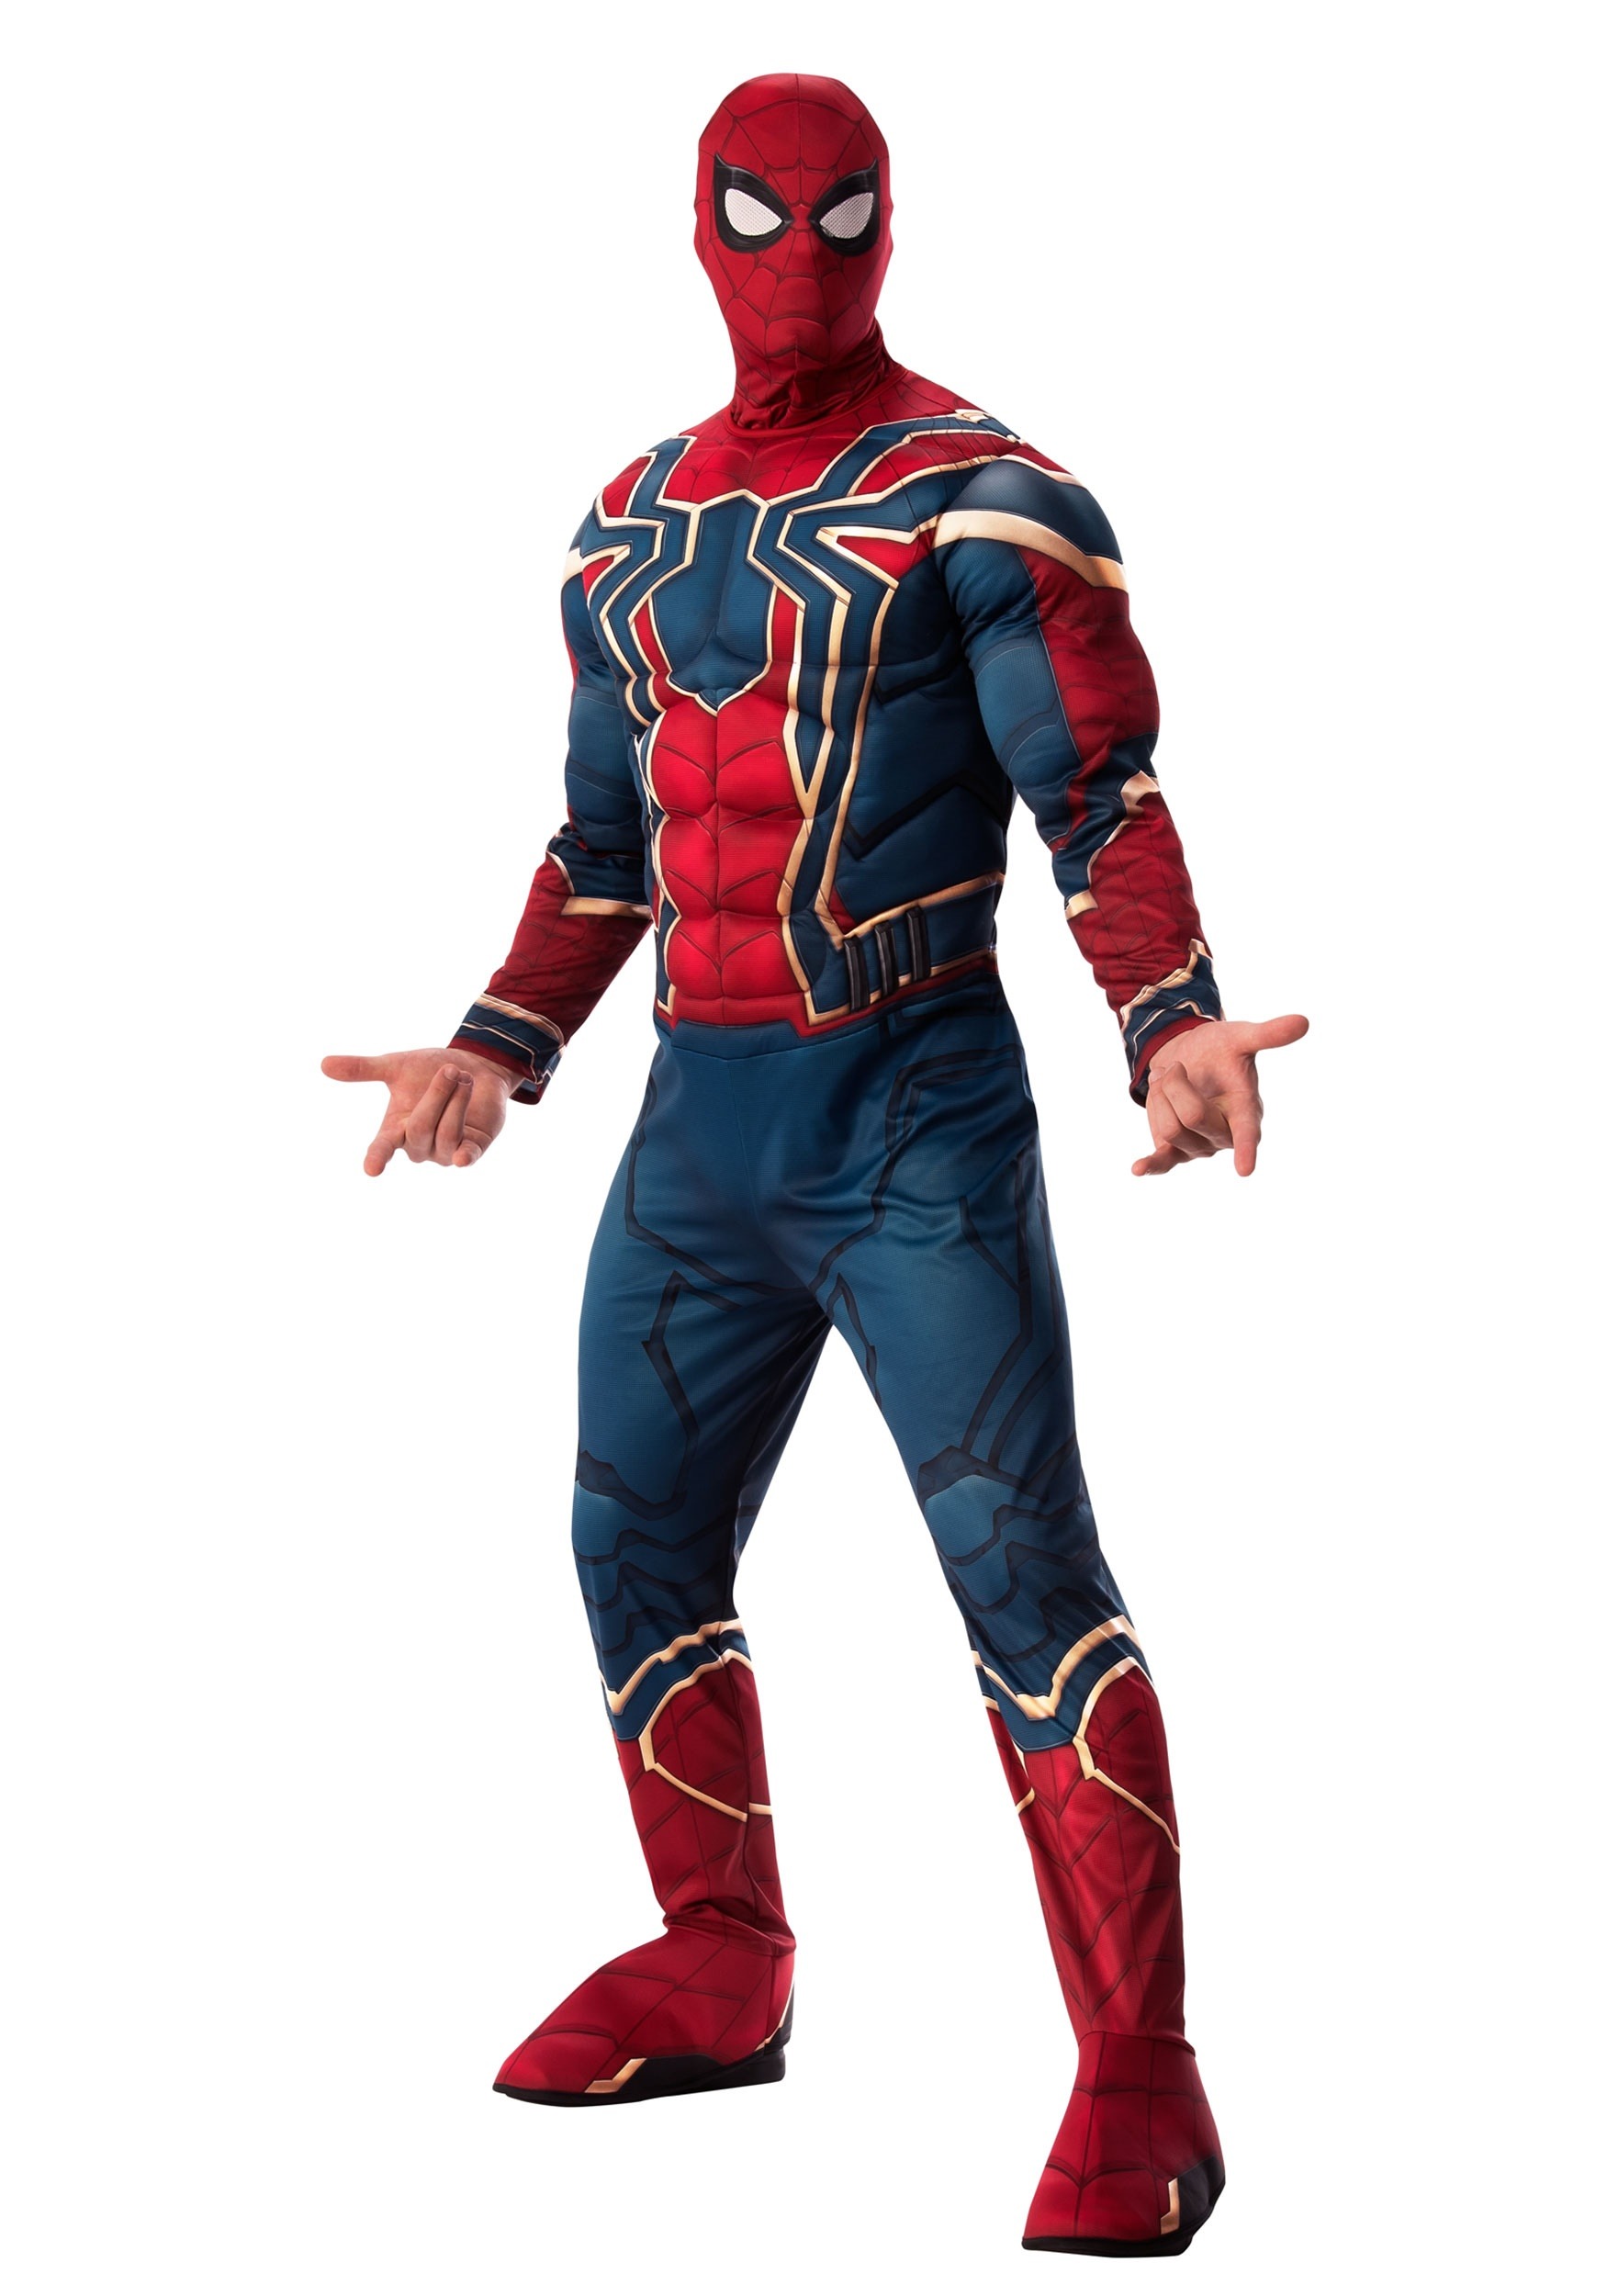 Super Iron Spider - Spider Man Iron Spider Suit - HD Wallpaper 